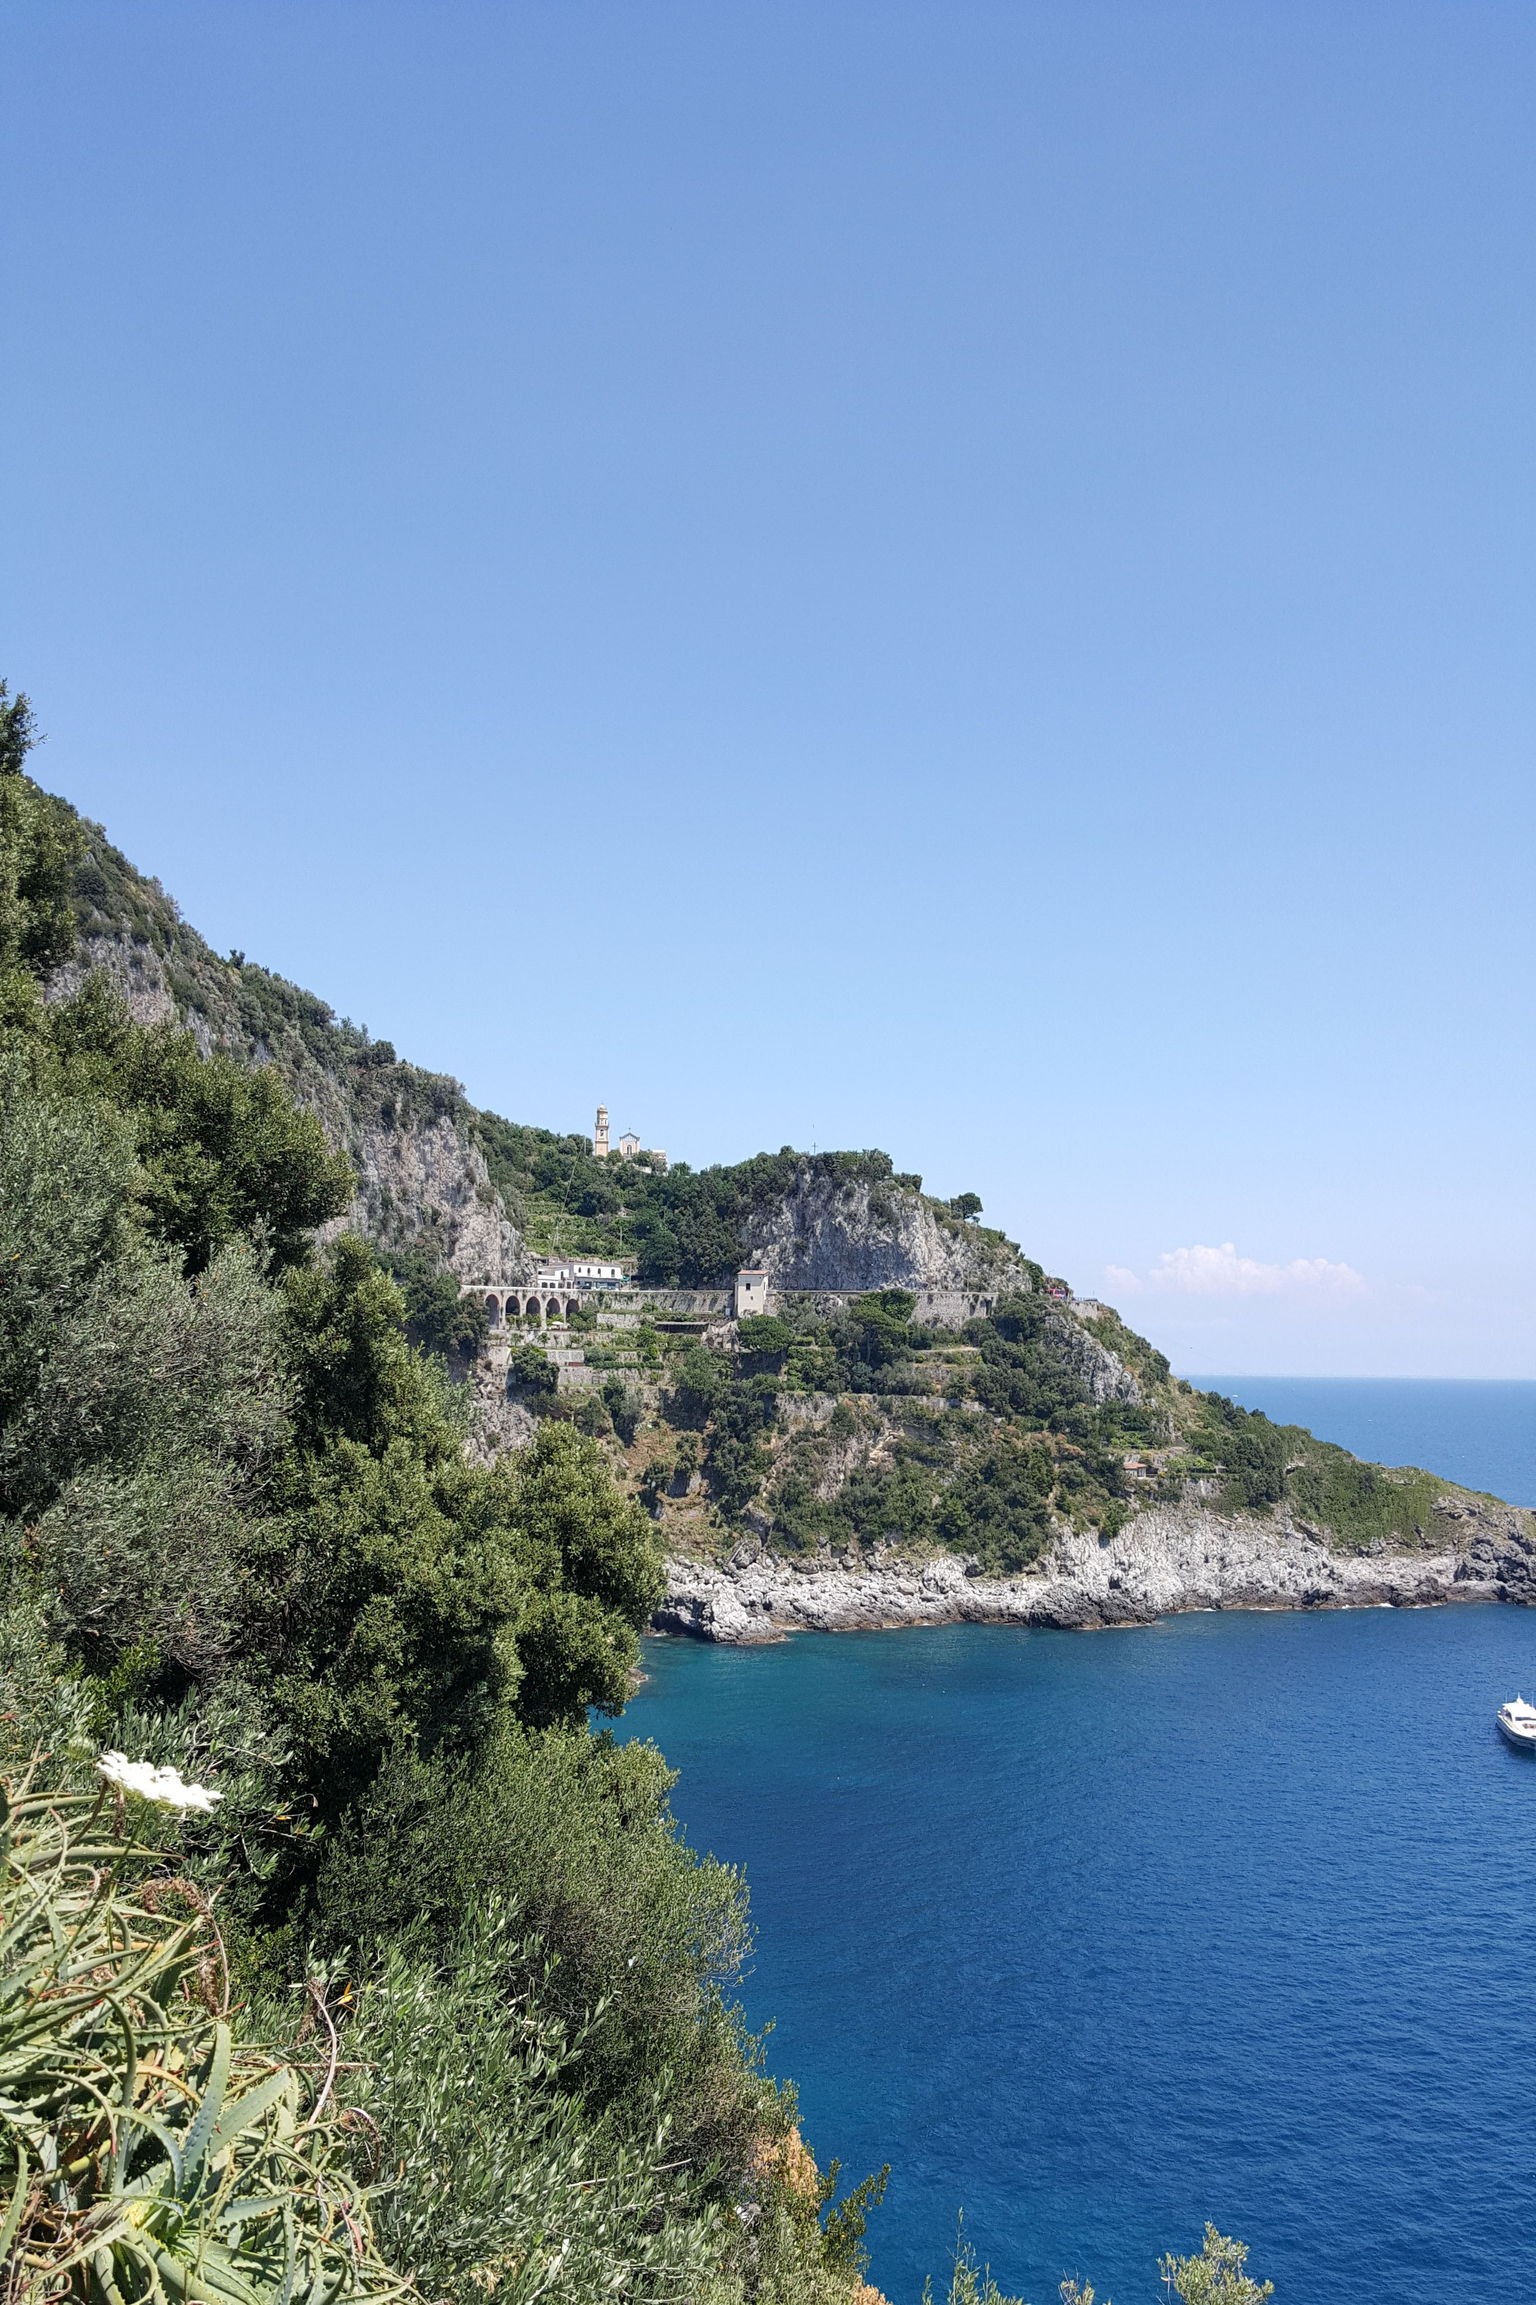 The beautiful Amalfi Coast!